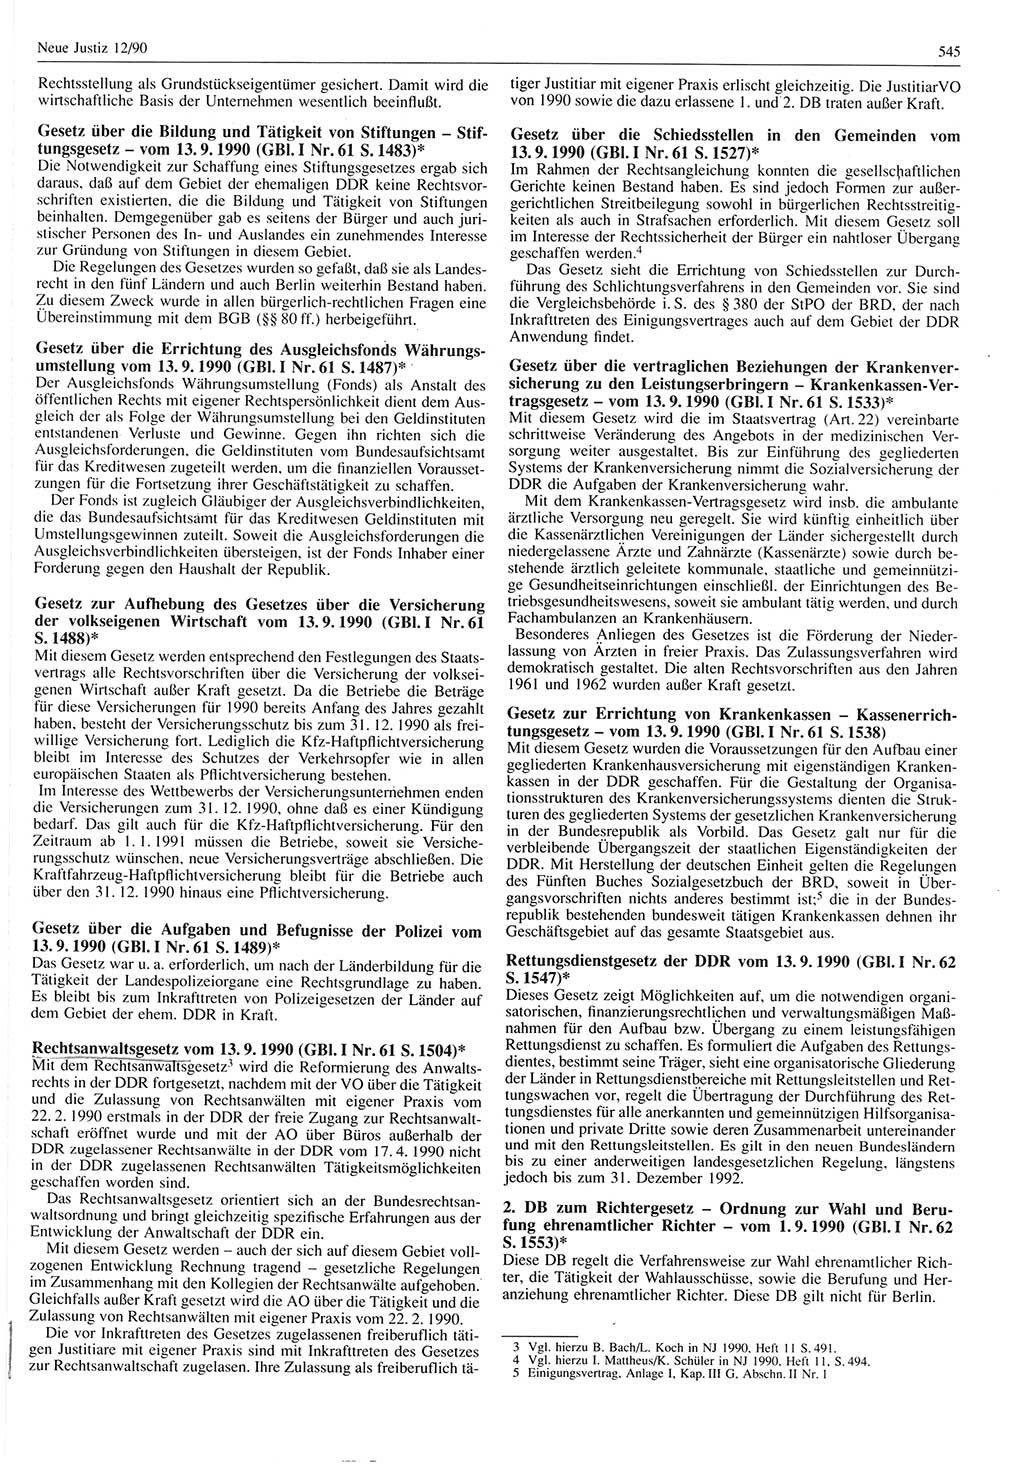 Neue Justiz (NJ), Zeitschrift für Rechtsetzung und Rechtsanwendung [Deutsche Demokratische Republik (DDR)], 44. Jahrgang 1990, Seite 545 (NJ DDR 1990, S. 545)